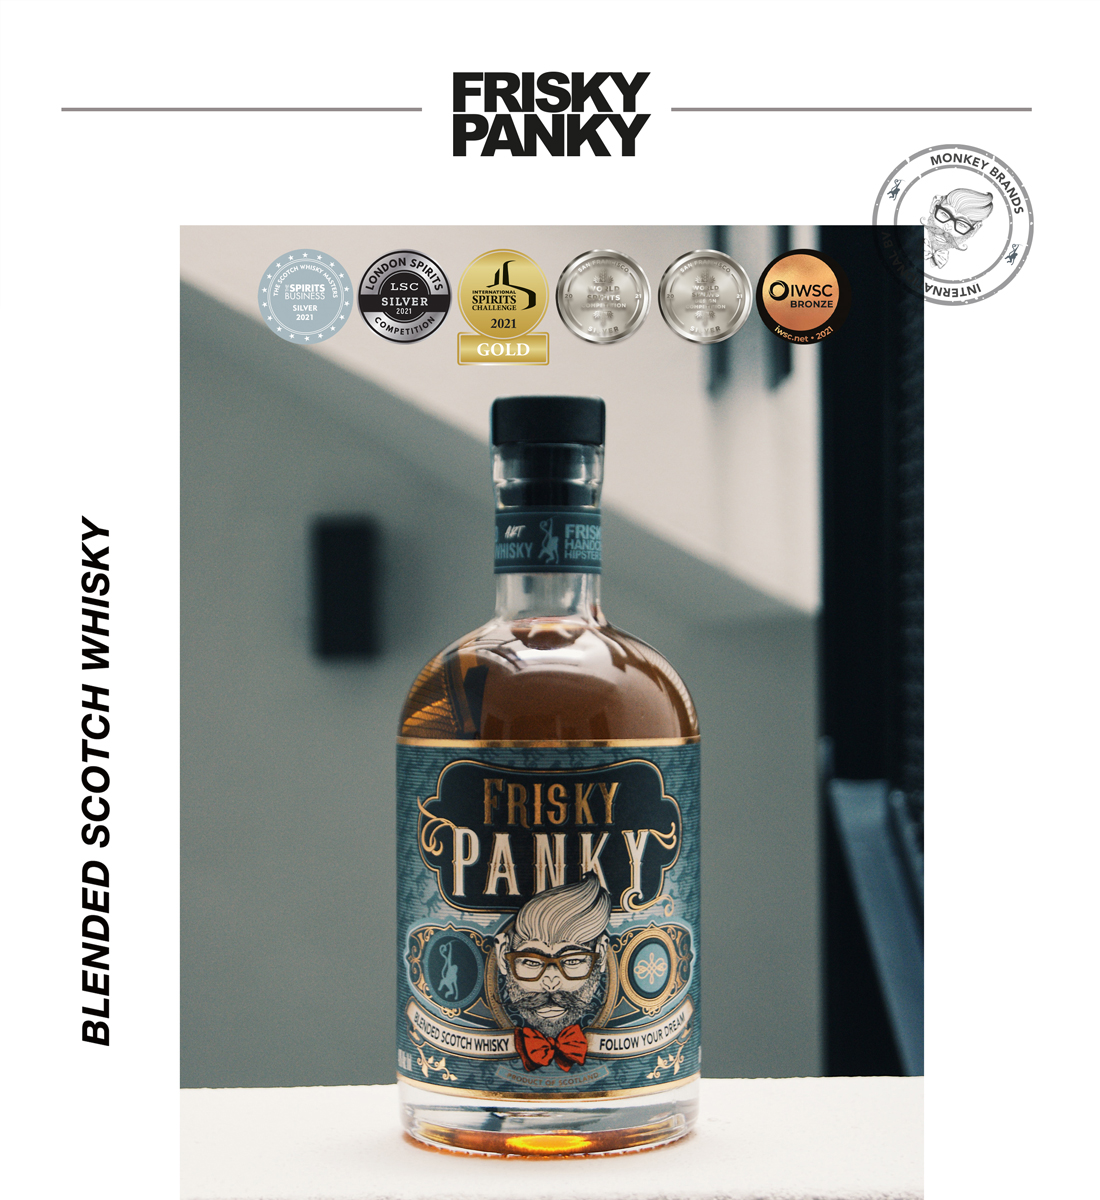 Frisky Panky Blended Scotch Whisky 0.7L